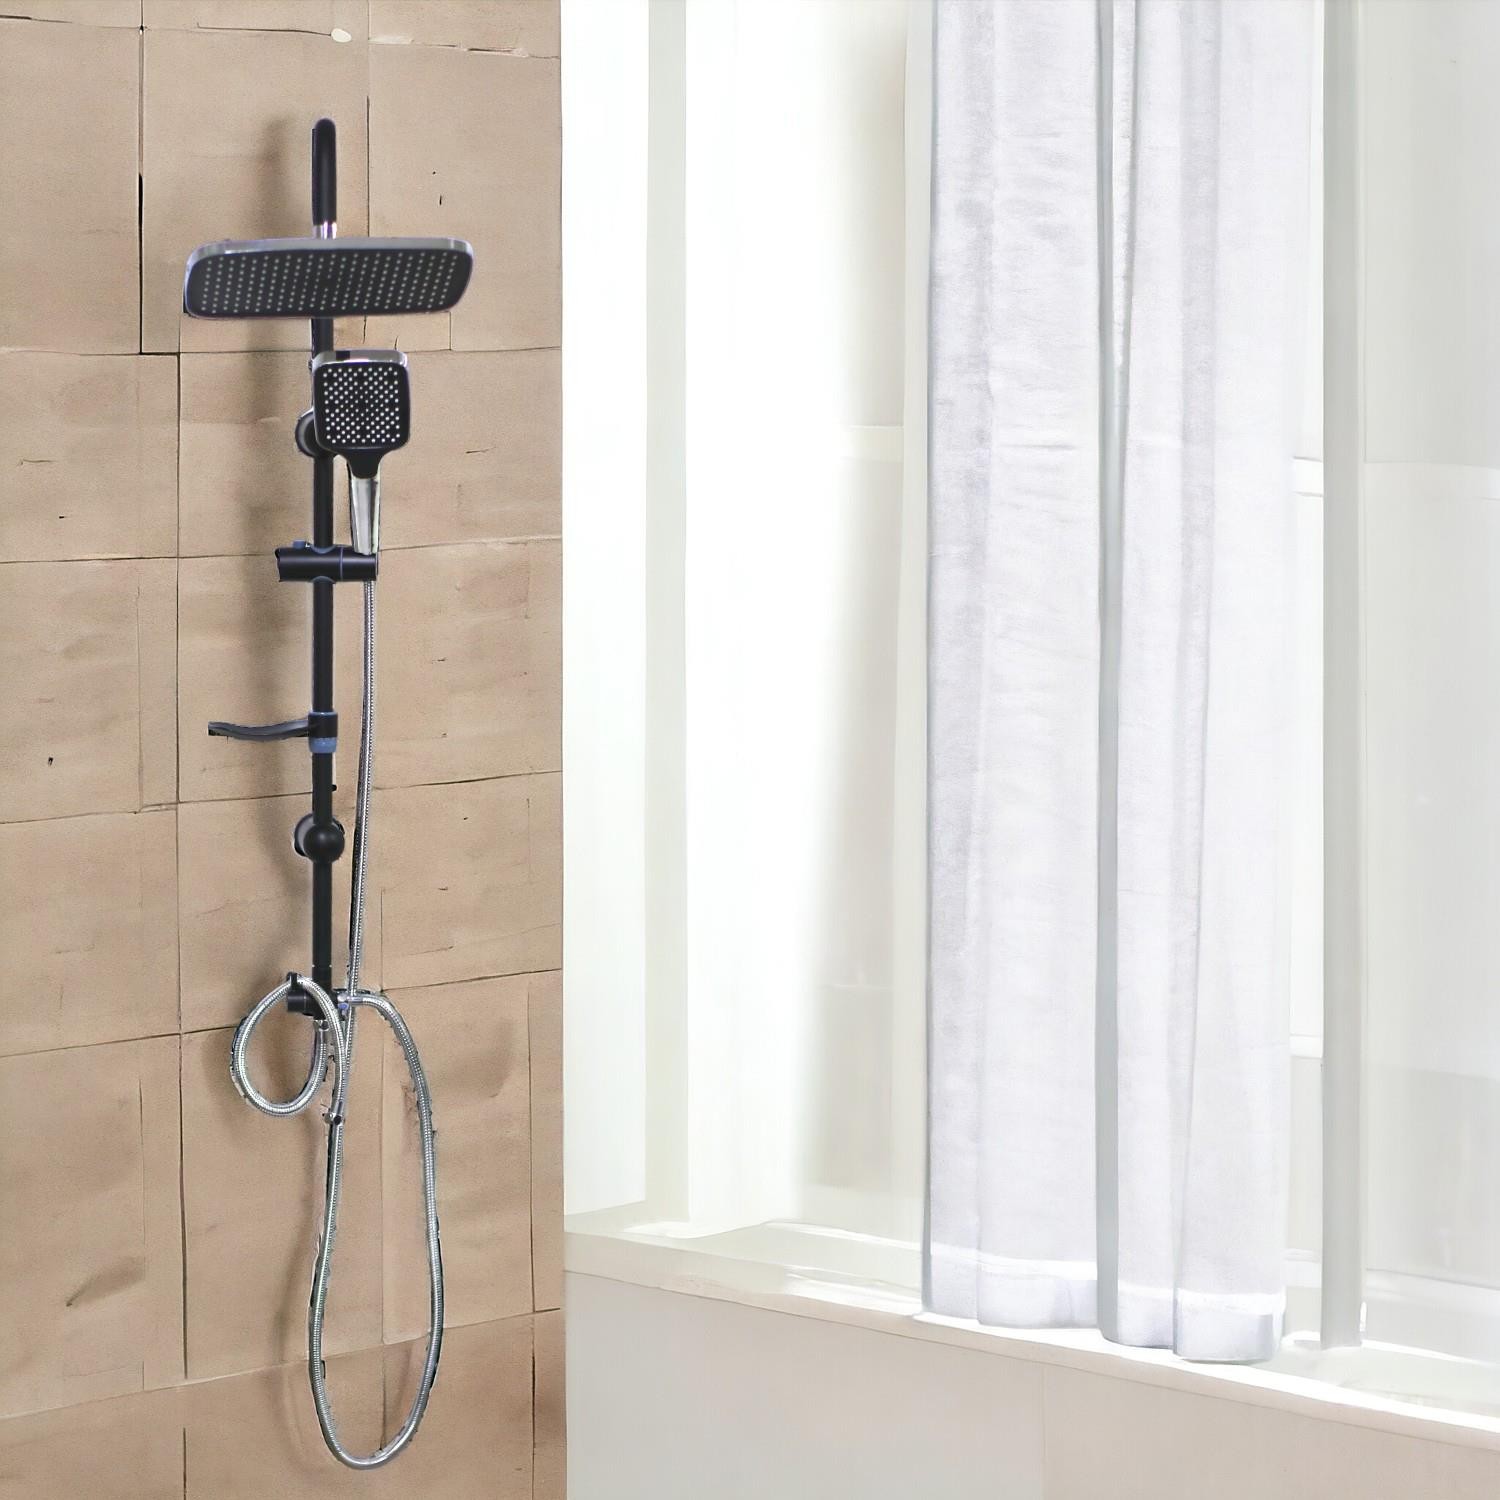 Robot Tepe Duş Seti Takımı Shower Yağmurlama Kare Banyo Masaj Duş Başlığı Sistemi Siyah